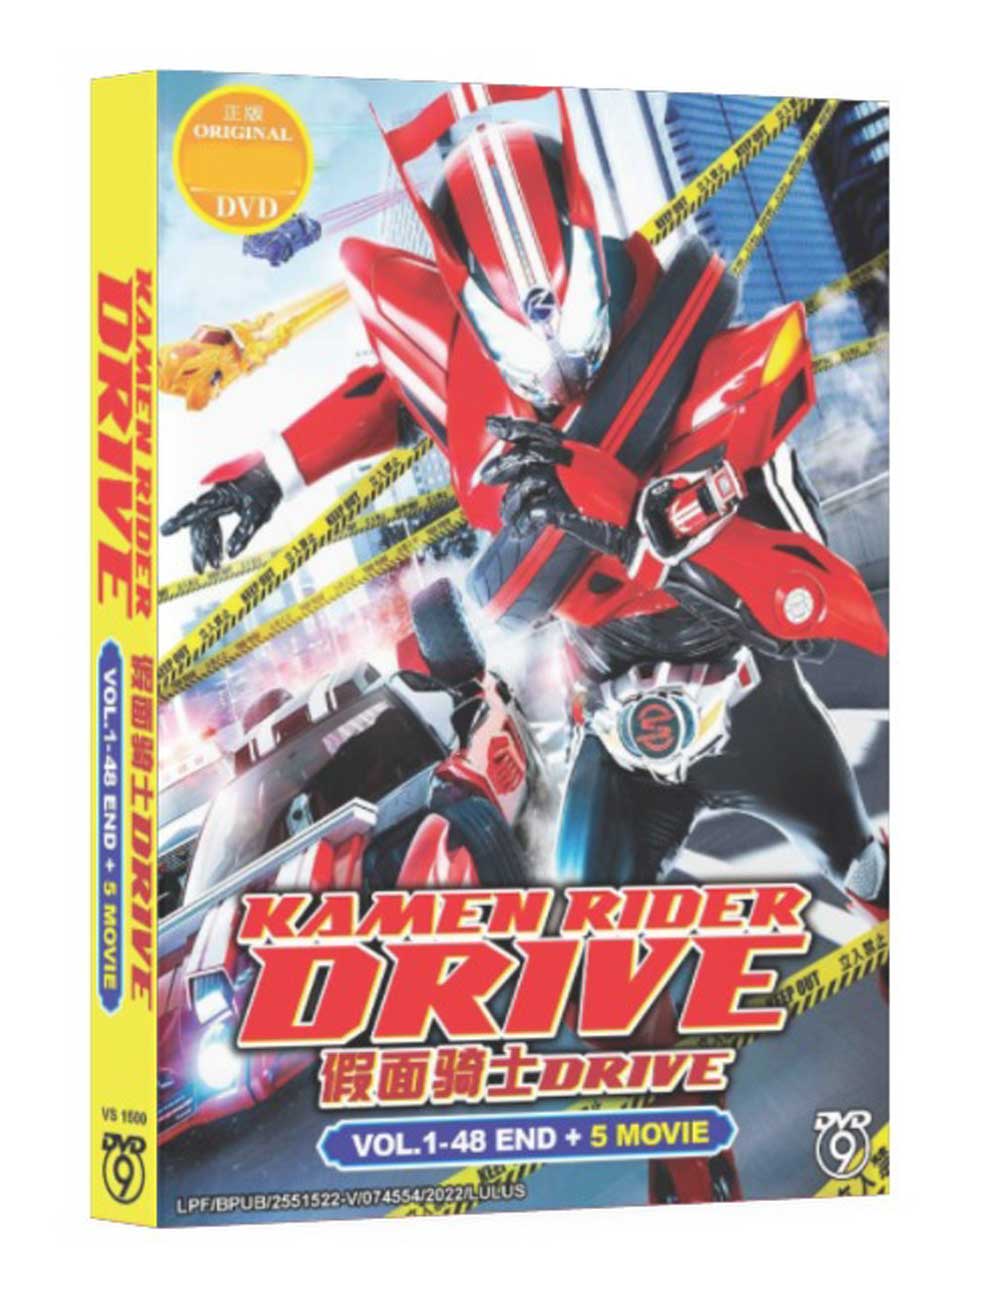 假面骑士DRIVE  + 5 Movie (DVD) (2015) 动画